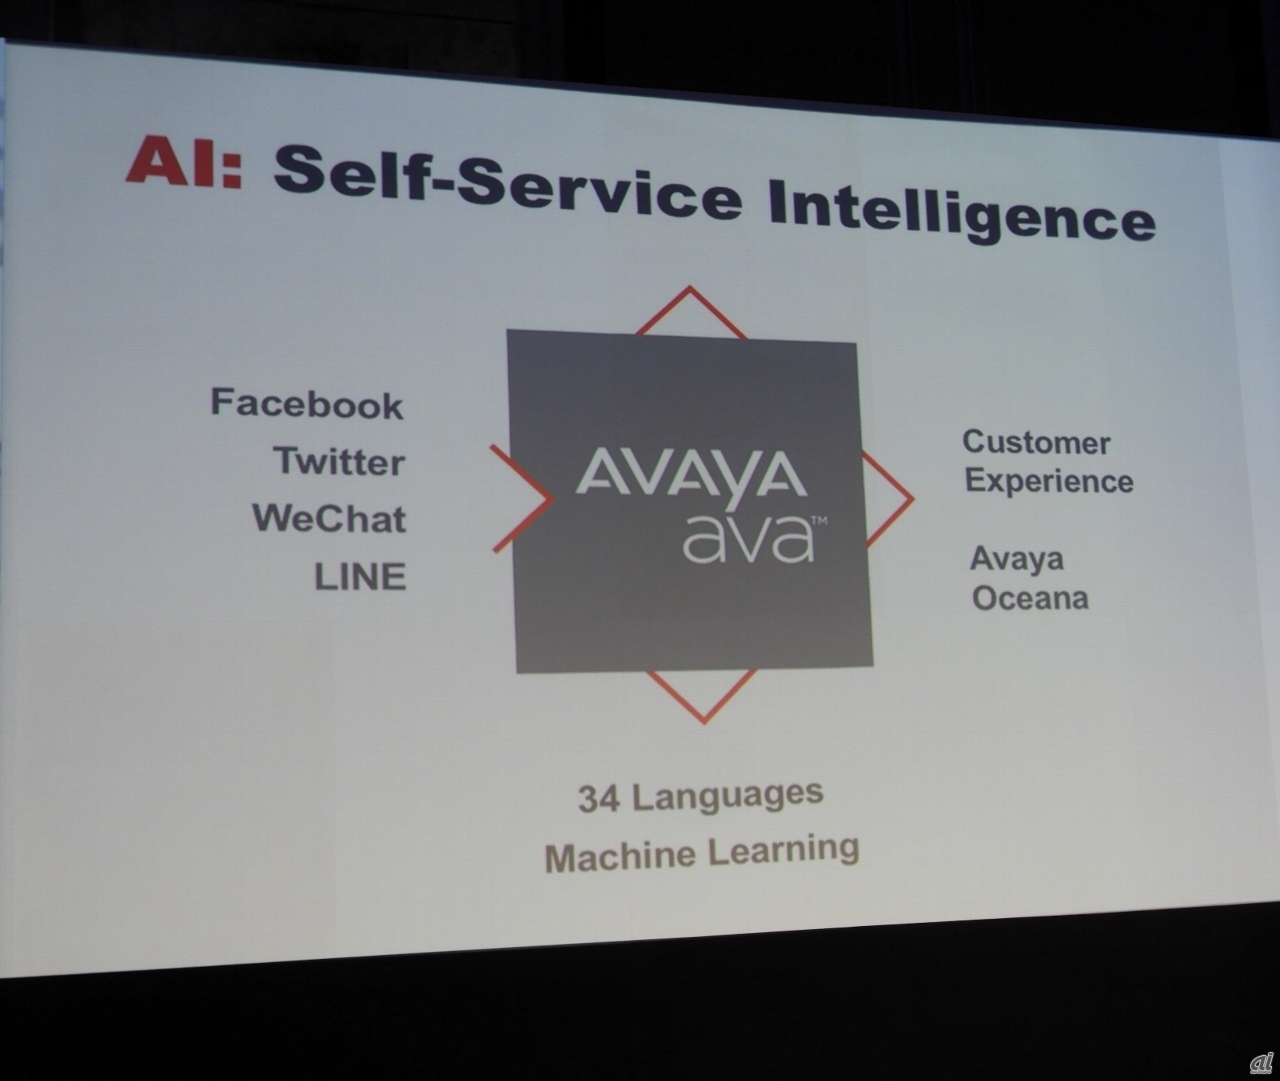 2018年1月に発表された「Avaya Ava」は、チャットボットと自然言語処理（NLP）を活用したクラウドAIソリューションだ。ソーシャルメディア、チャット、メッセージングチャネルを使用してエンドユーザーとのやり取りを可能にする。現時点では34の言語に対応しているという。